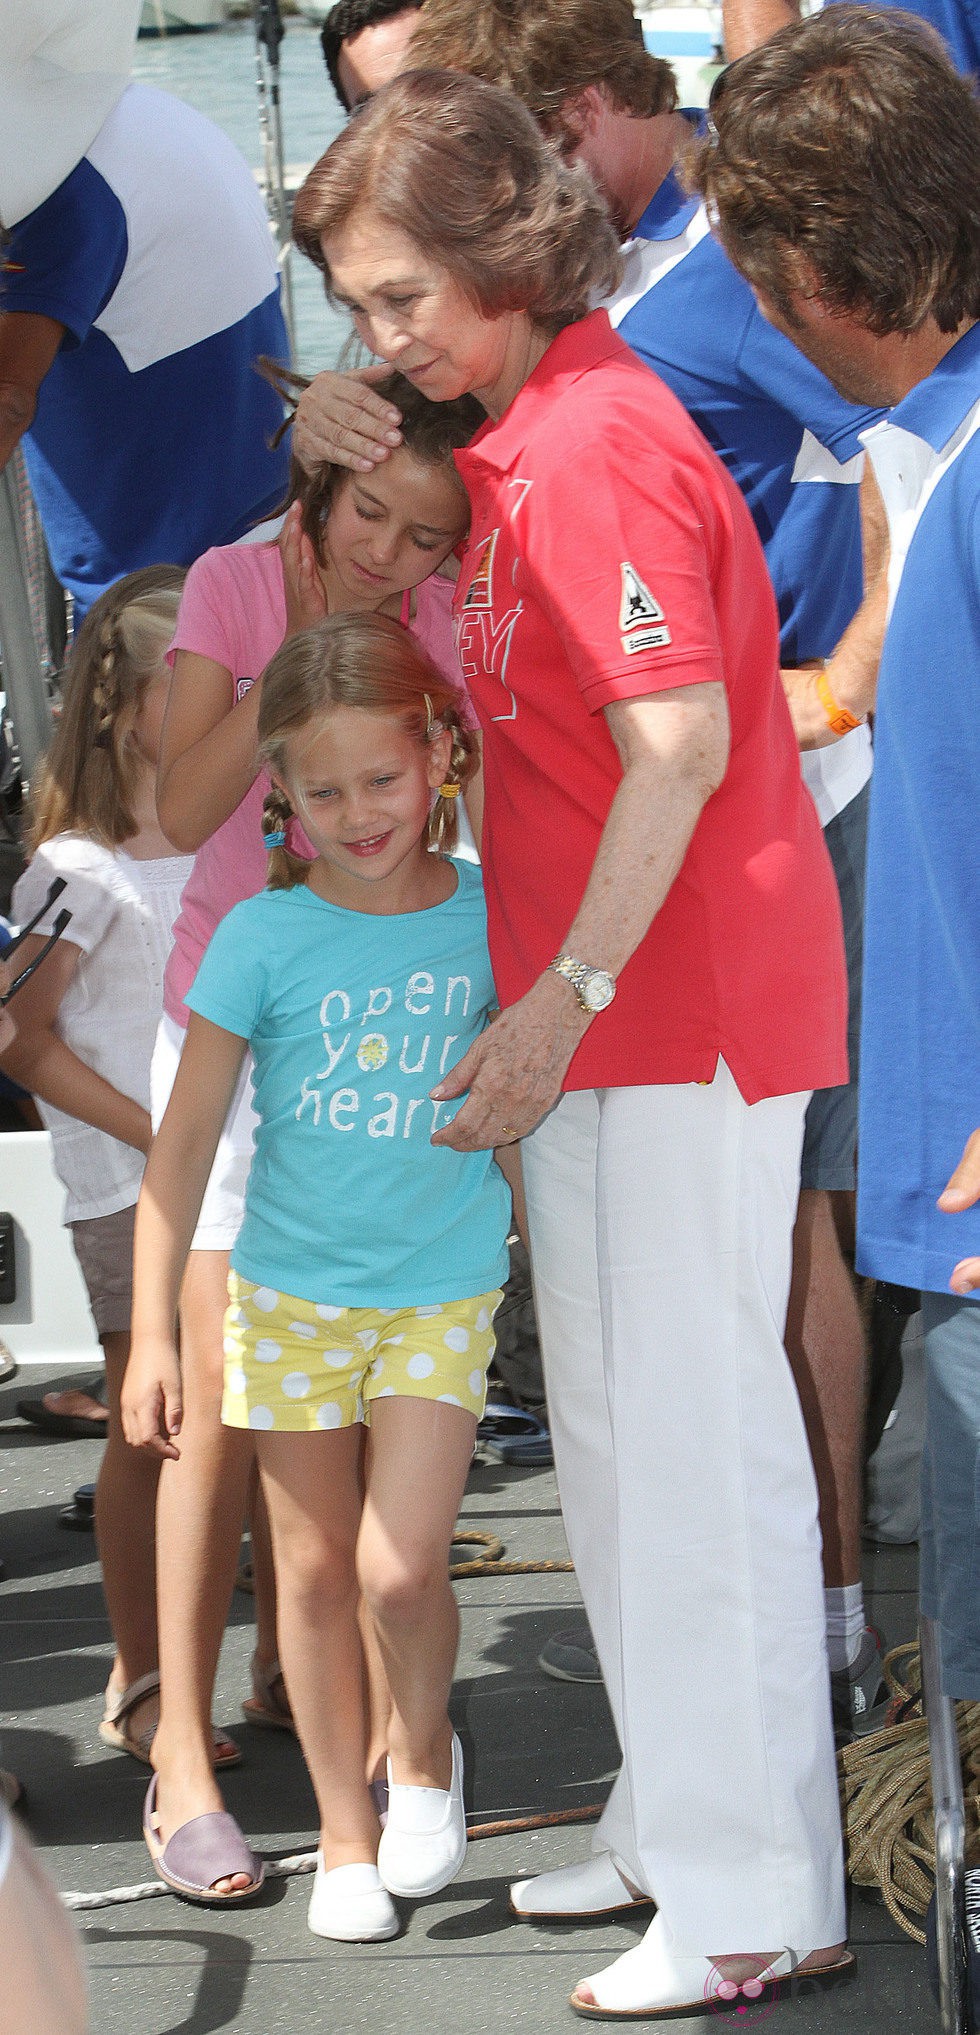 La Reina, Victoria Federica e Irene Urdangarín en el segundo día de regatas 2011